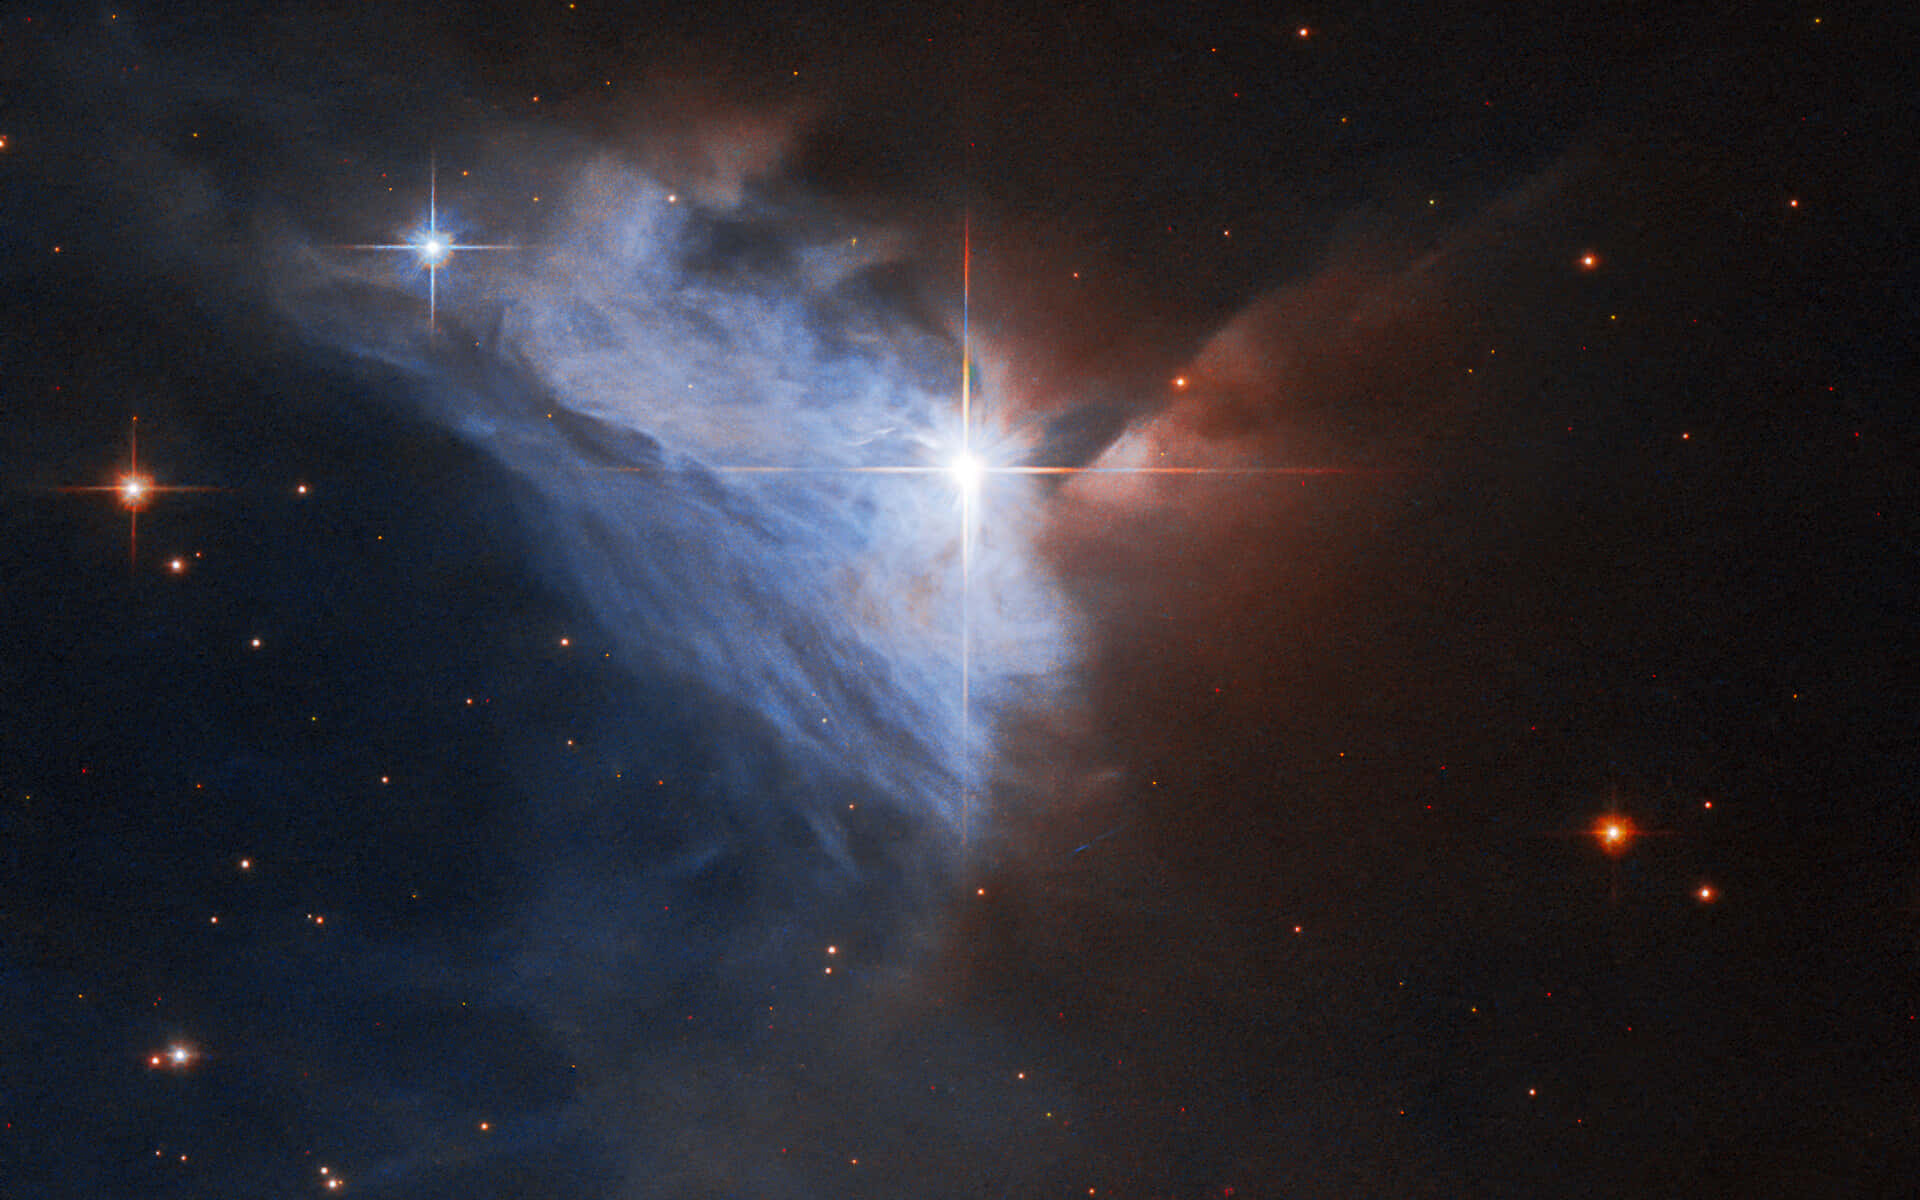 "Stunning Colorful Nebula"